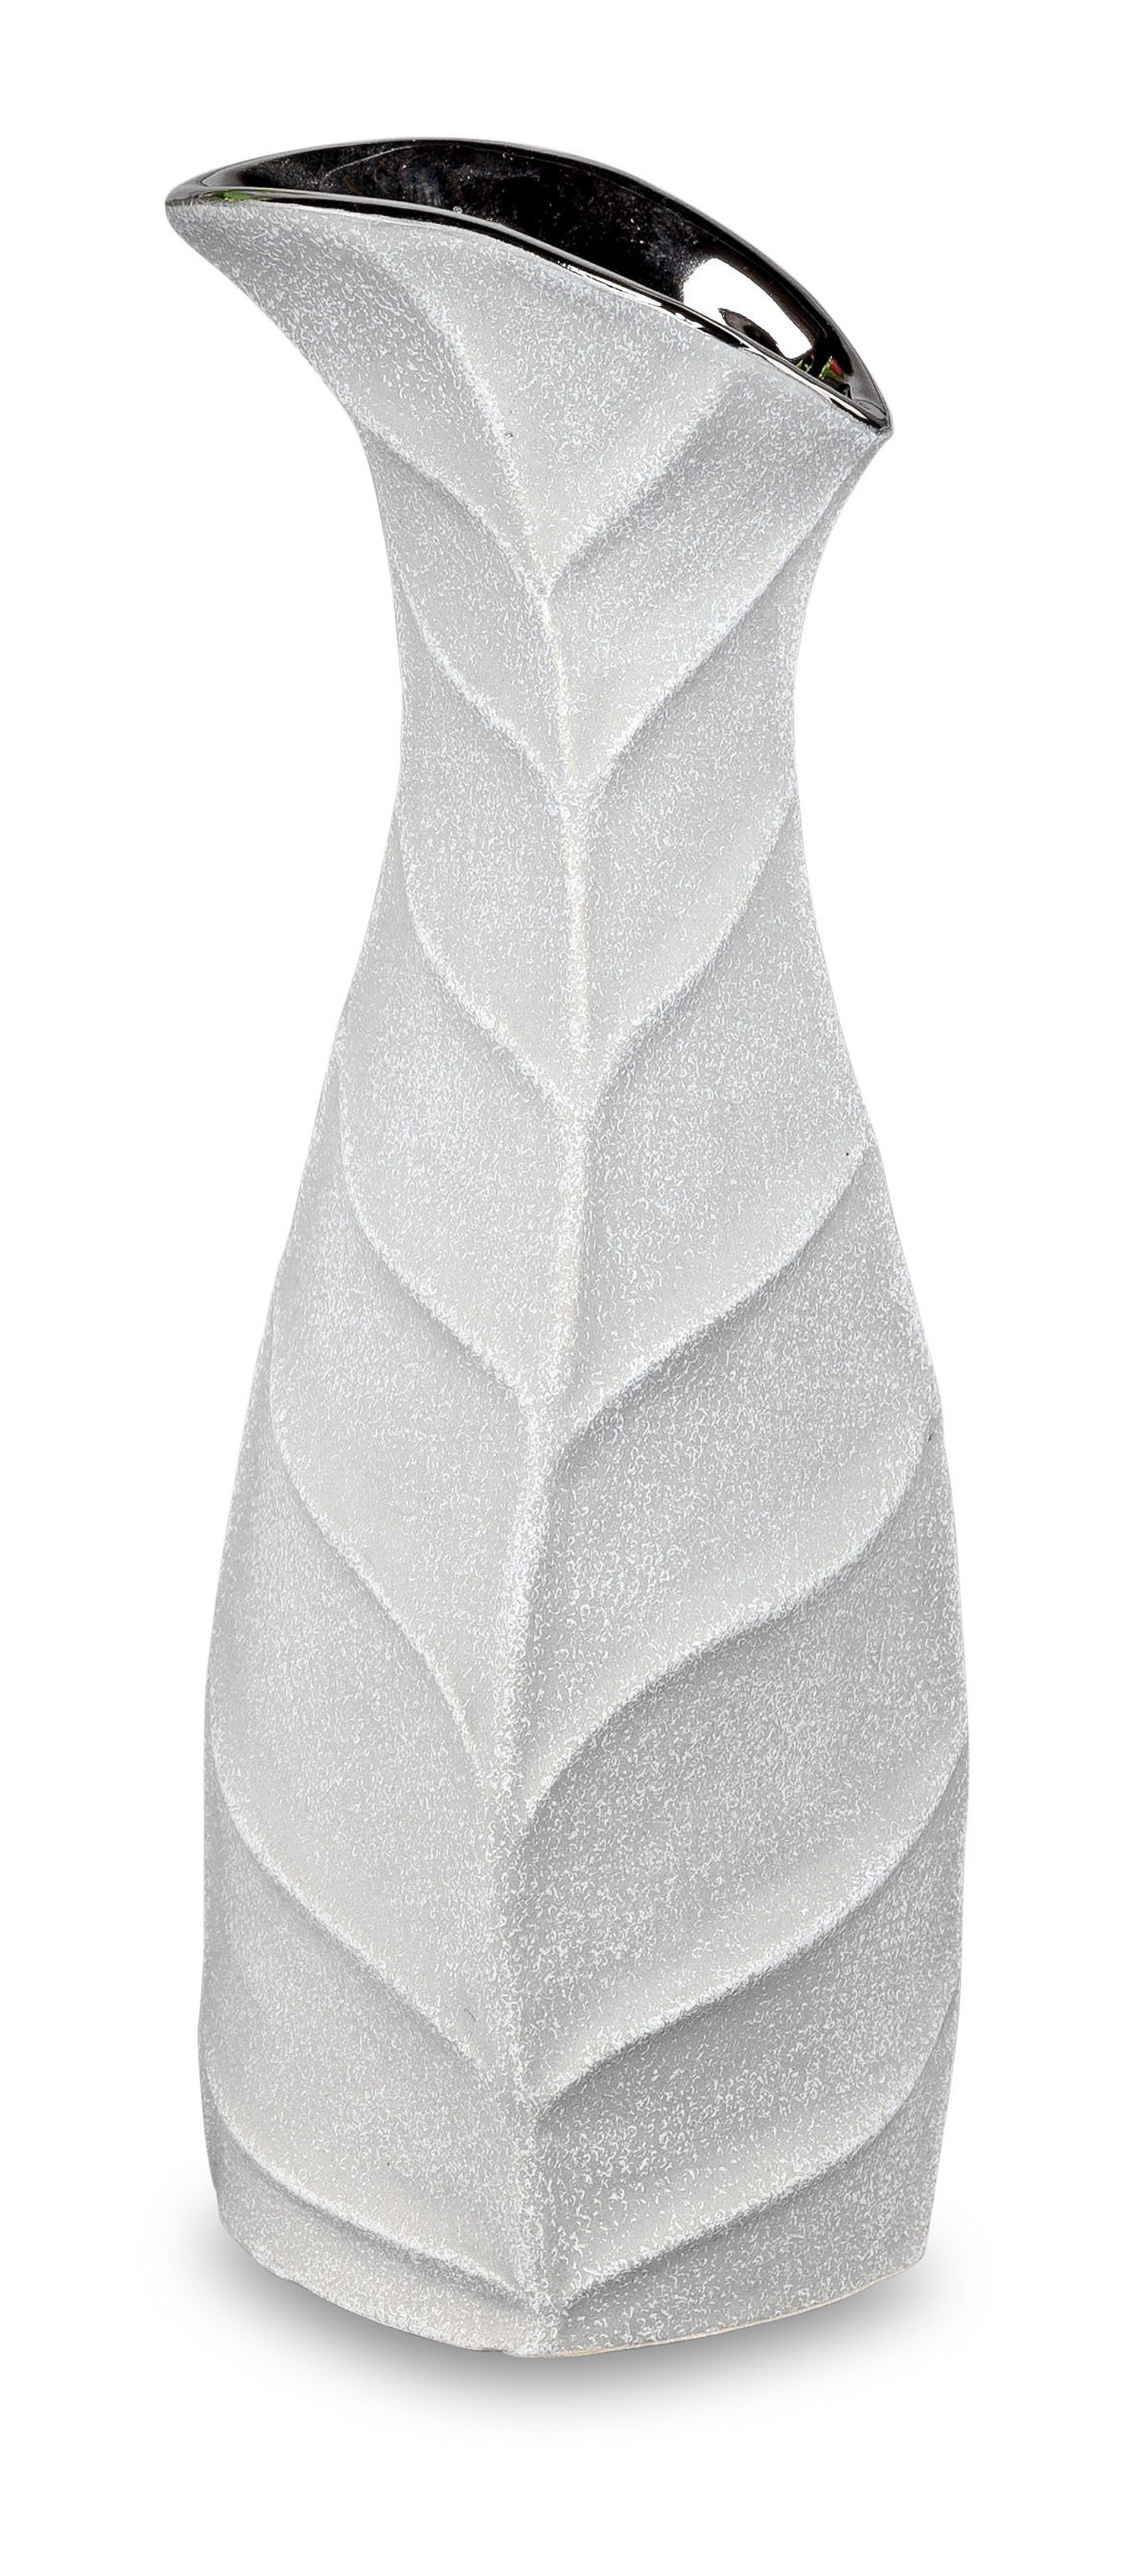 Small-Preis Dekovase Formano Vase Tischvase im Steindesign und Öffnung in silber